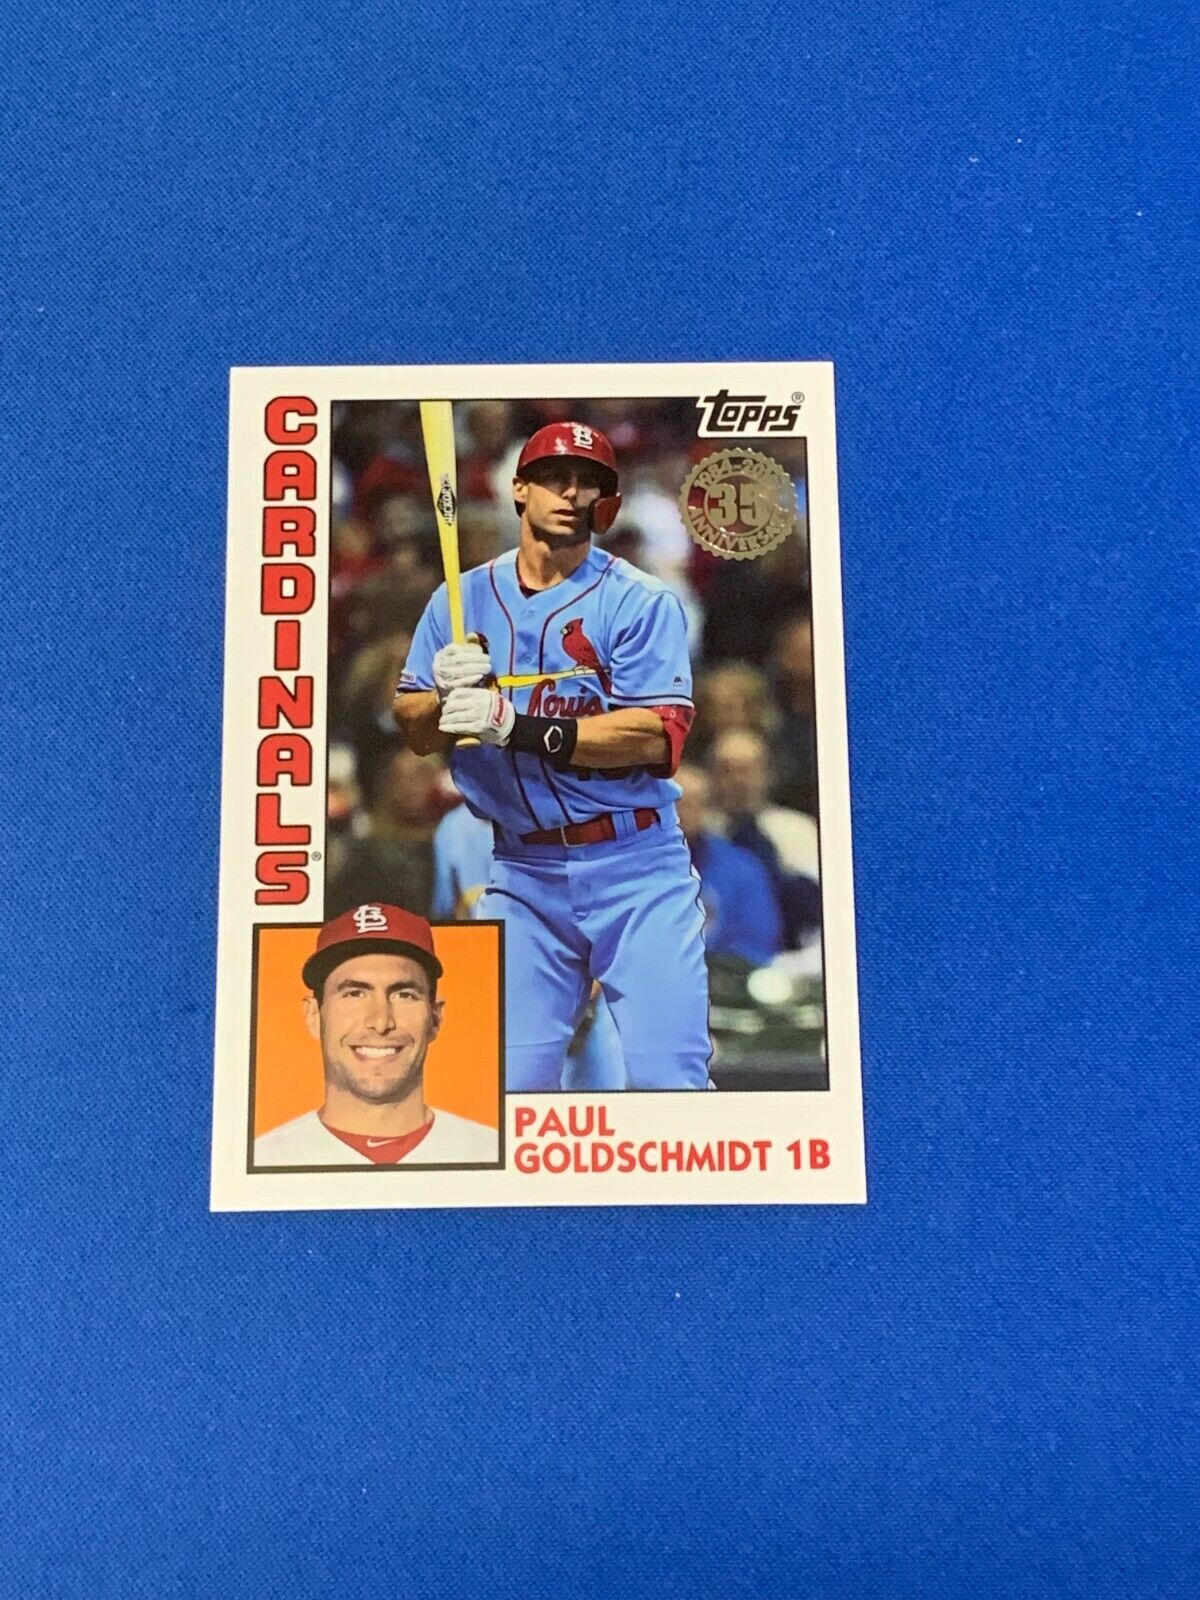 2019 Topps Baseball 1984 35th Ann Insert Card of Paul Goldschmidt